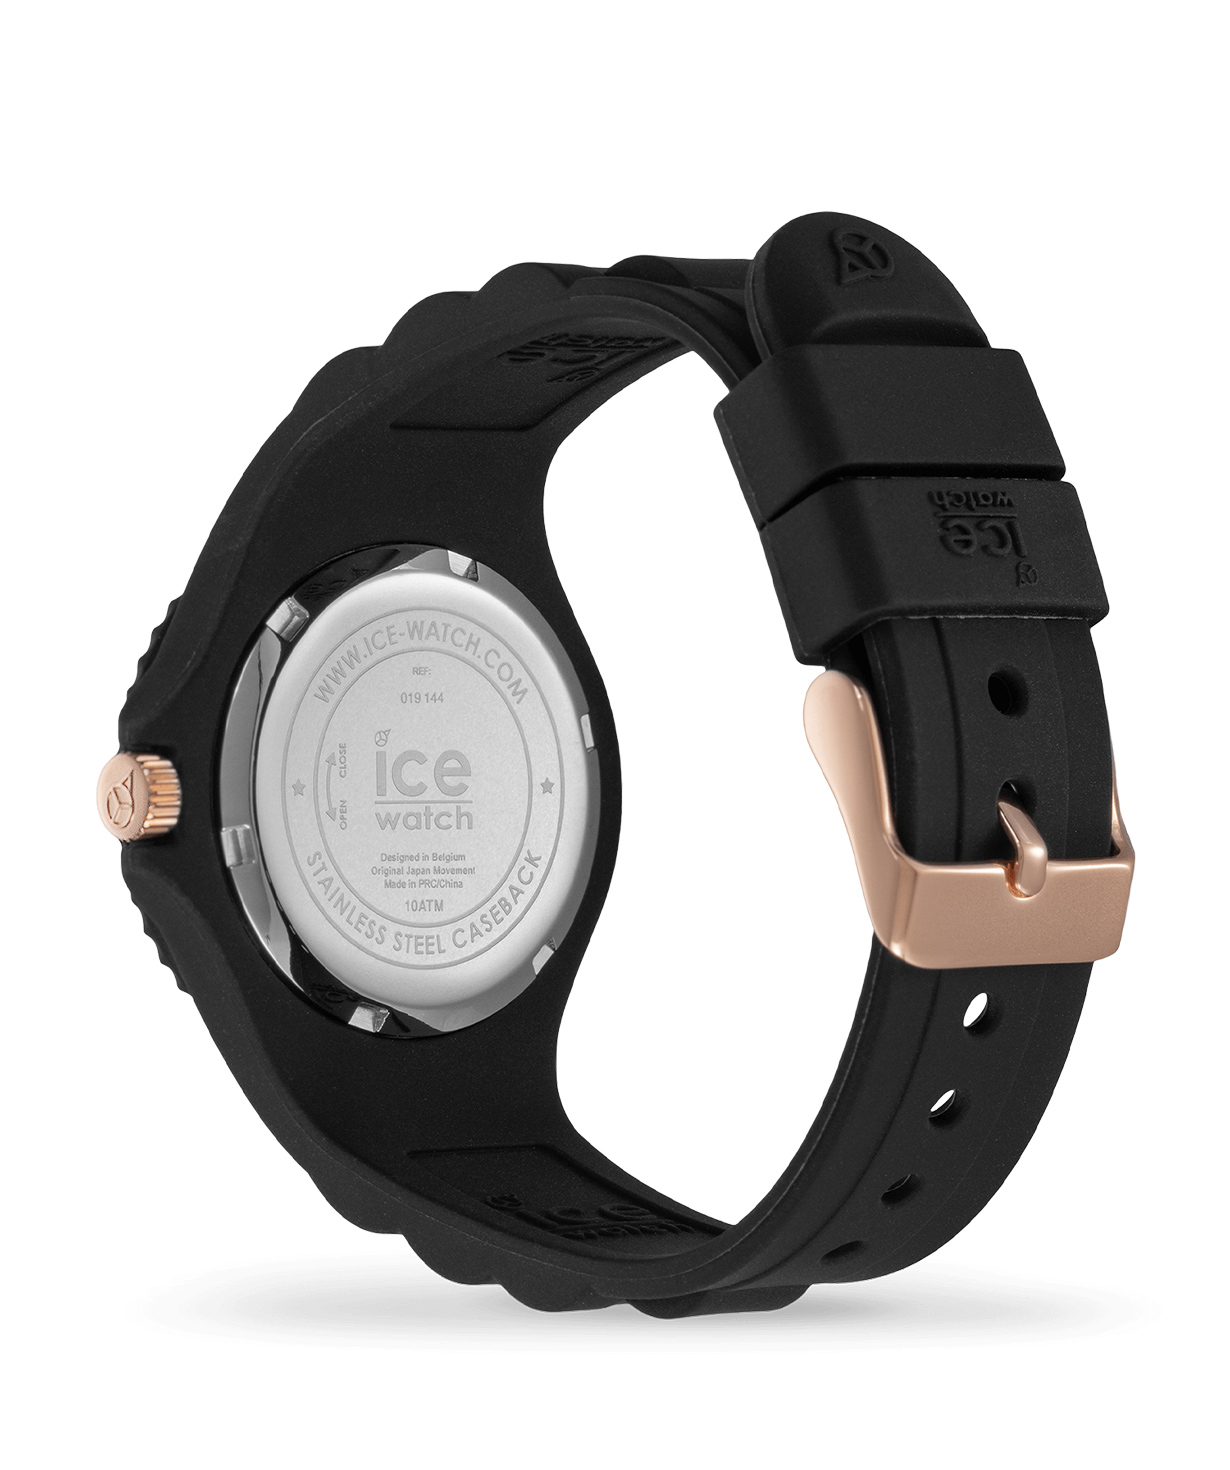 Ժամացույց «Ice-Watch» ICE generation - Sunset black